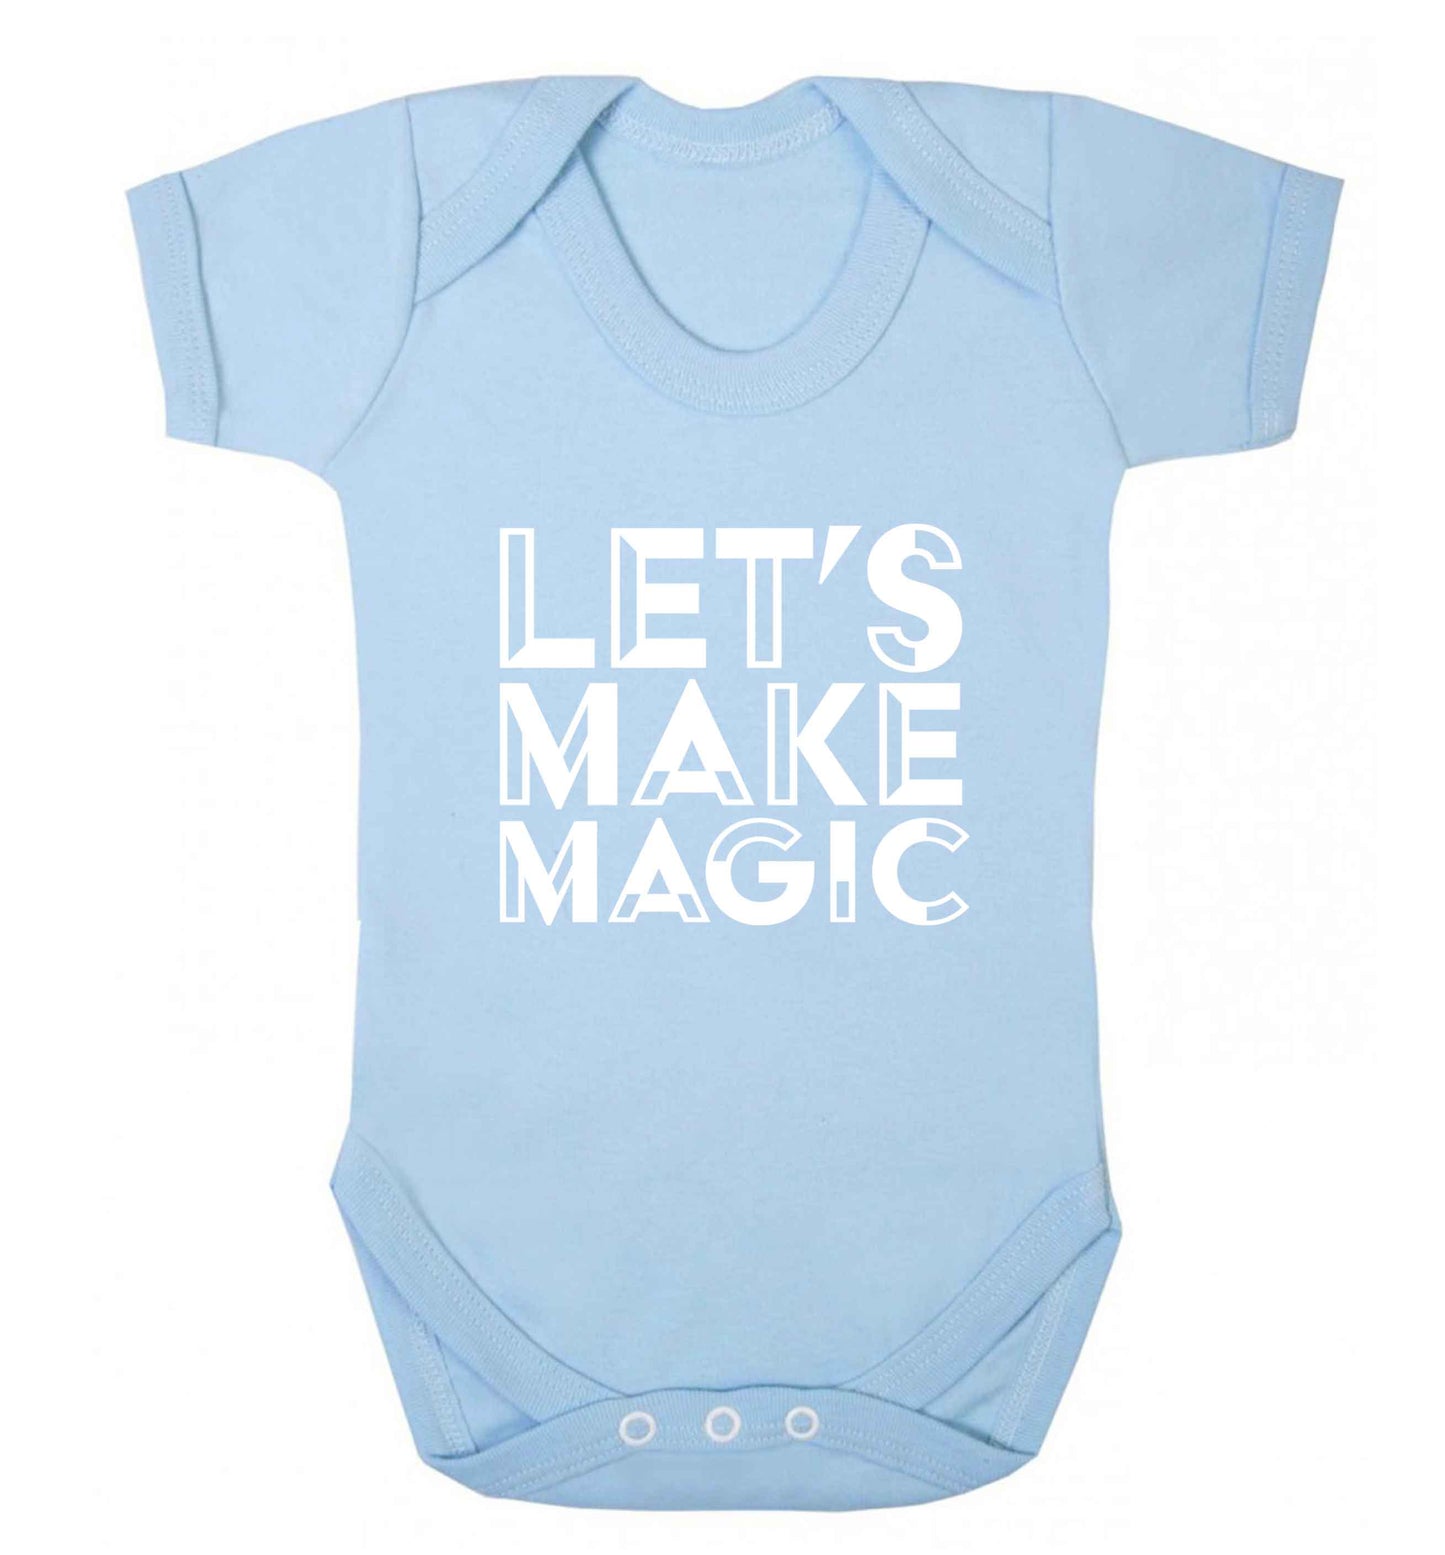 Let's make magic baby vest pale blue 18-24 months